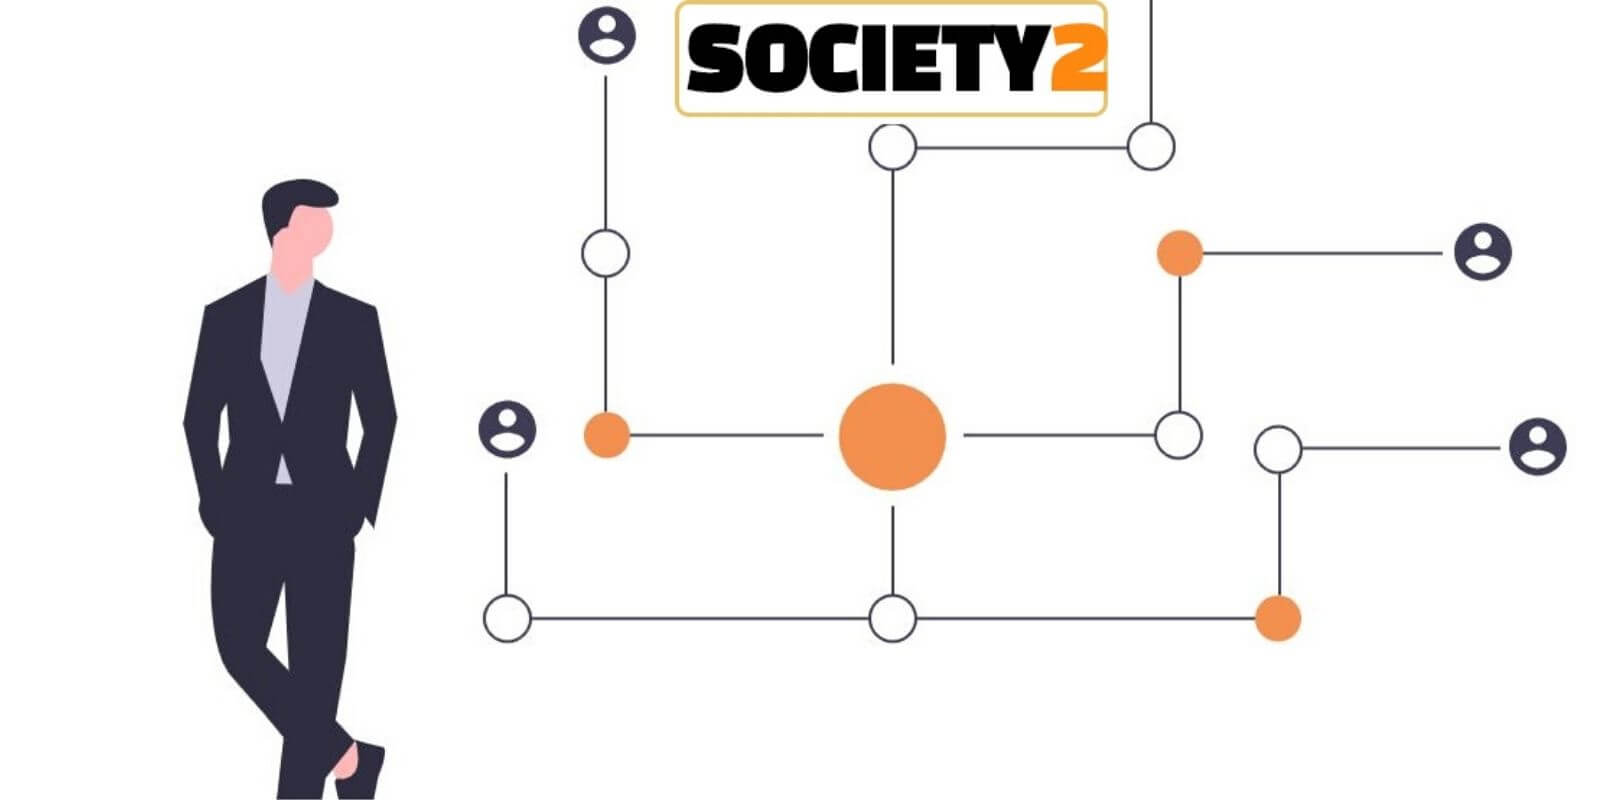 Society2, un nouveau réseau social décentralisé basé sur IOTA